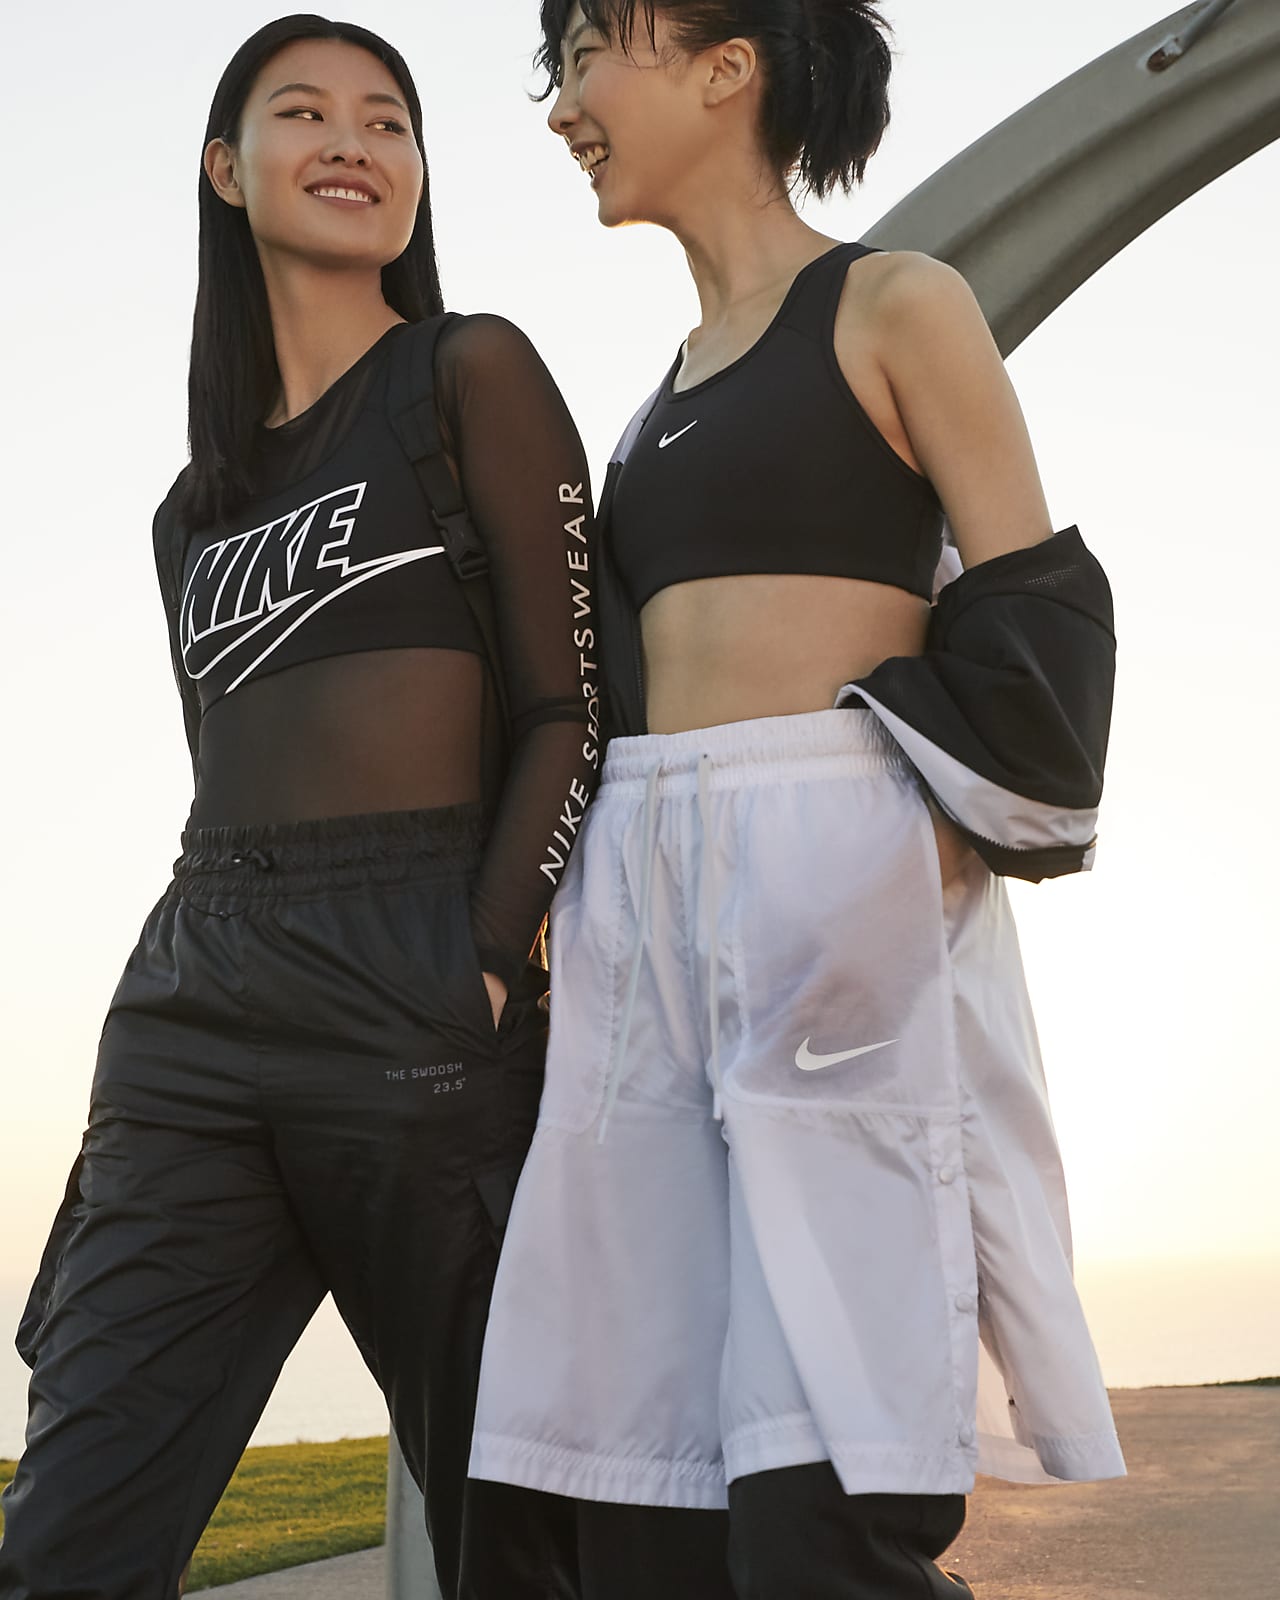  Nike BV3637 Women's Sports Bra, Sportswear, Yoga Wear,  multicolor (black / white) : Clothing, Shoes & Jewelry